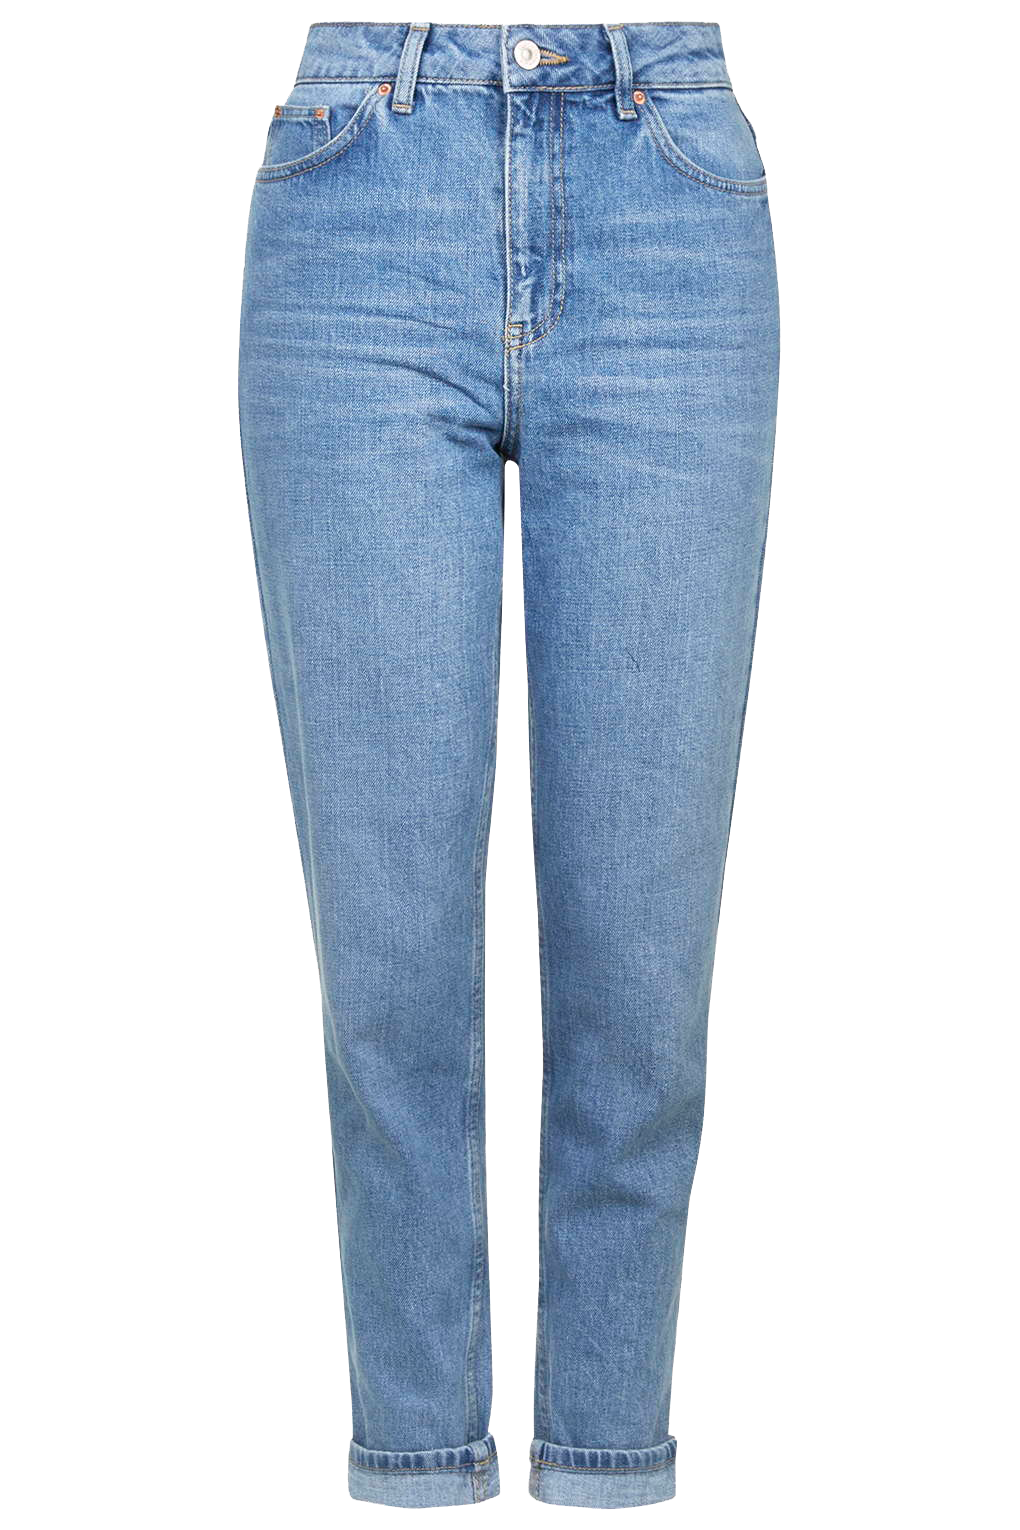 Pocket Topshop Jeans Denim Mom Free Frame PNG Image